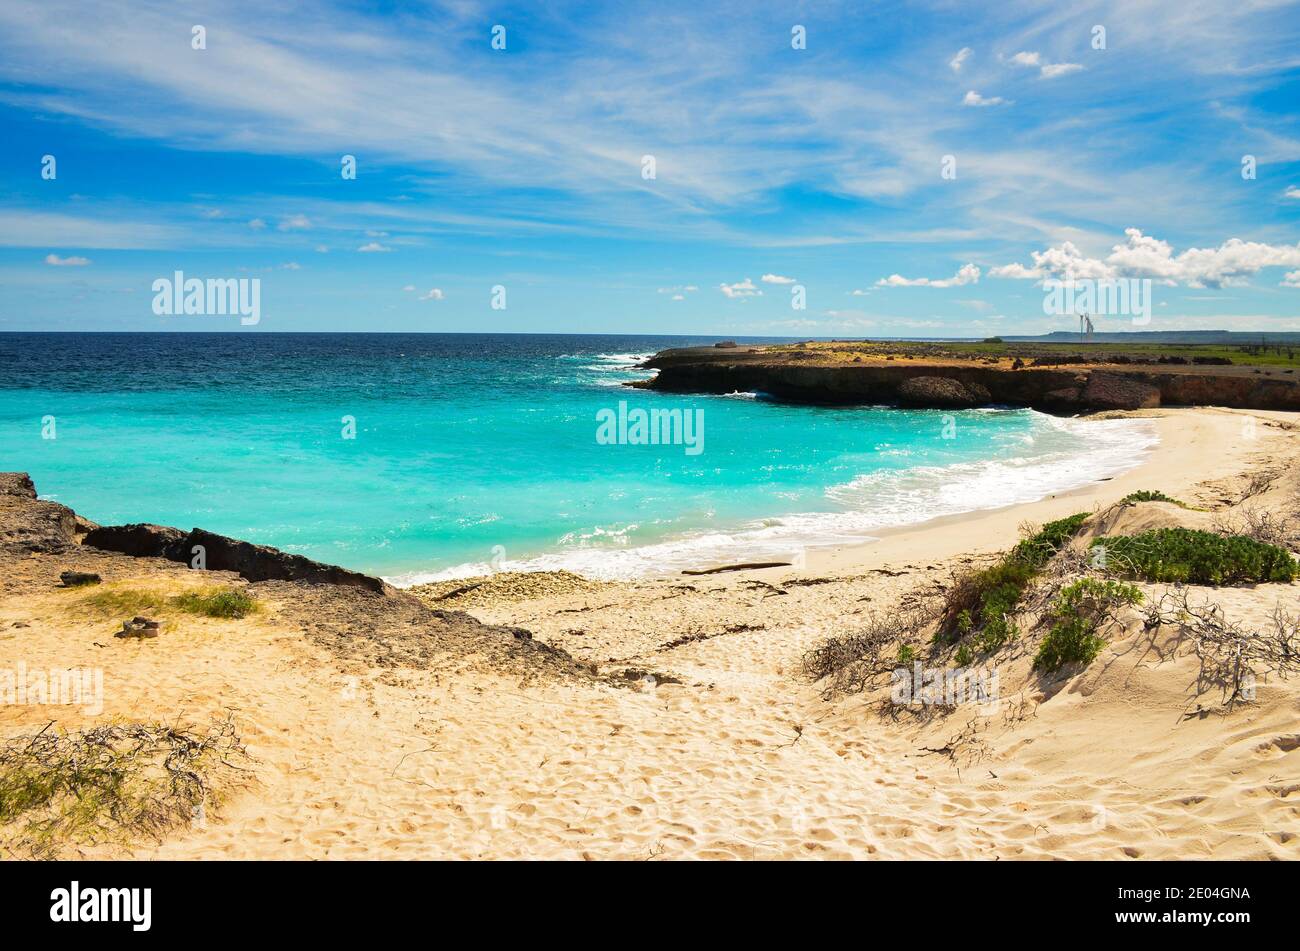 Playa Chikitu, bellissima spiaggia sull'isola caraibica di bonaire, luogo di snorkeling e immersioni sull'isola. Godetevi il relax nella sabbia sul mare Foto Stock